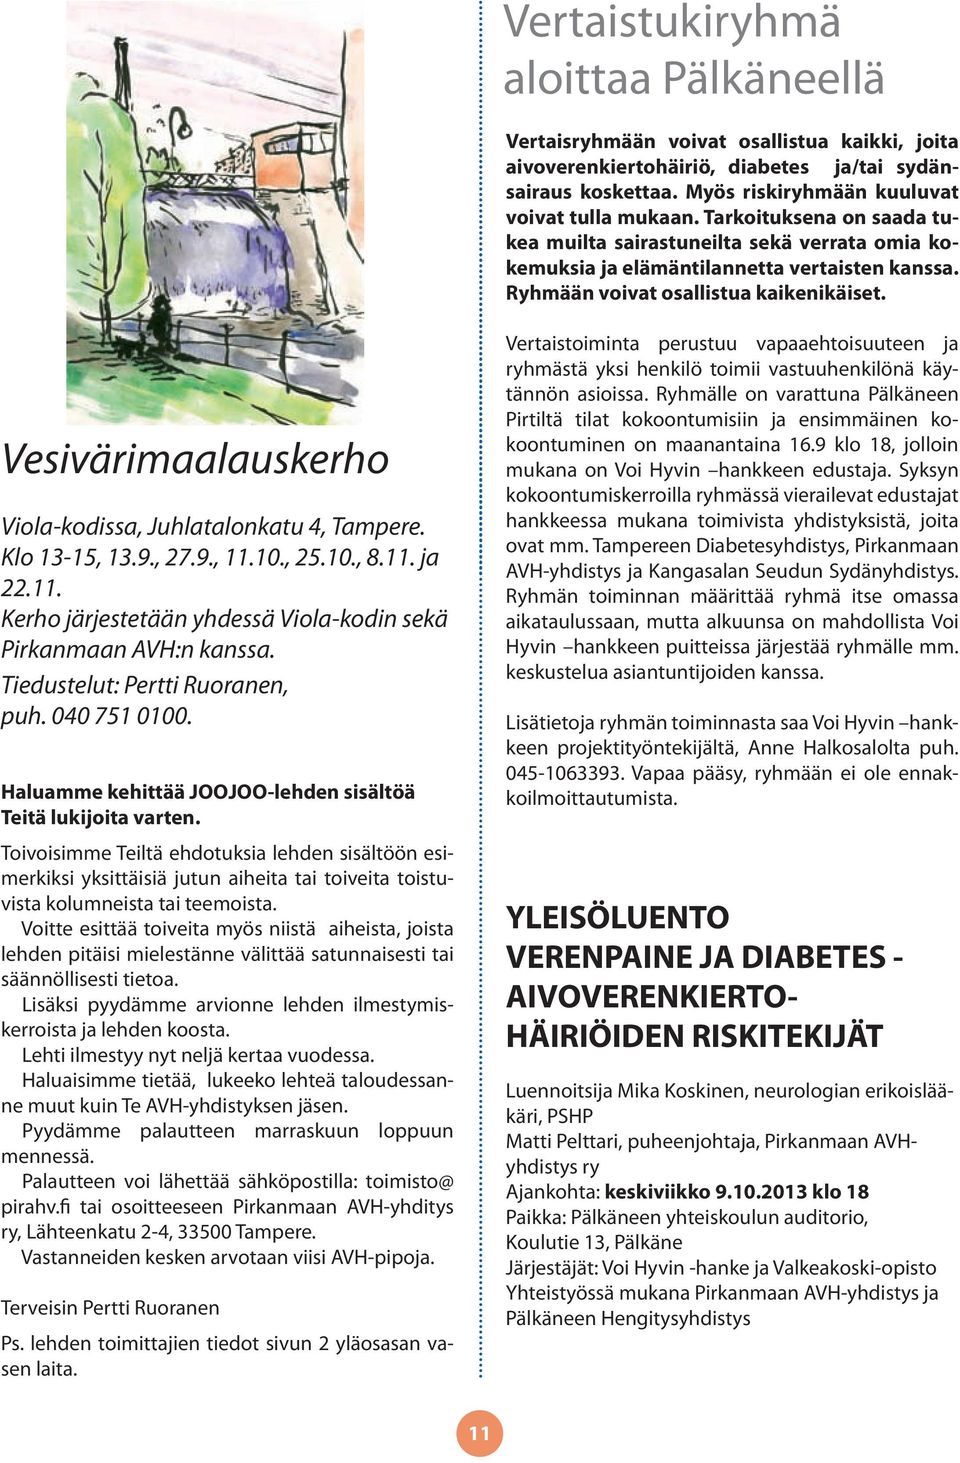 Vesivärimaalauskerho Viola-kodissa, Juhlatalonkatu 4, Tampere. Klo 13-15, 13.9., 27.9., 11.10., 25.10., 8.11. ja 22.11. Kerho järjestetään yhdessä Viola-kodin sekä Pirkanmaan AVH:n kanssa.